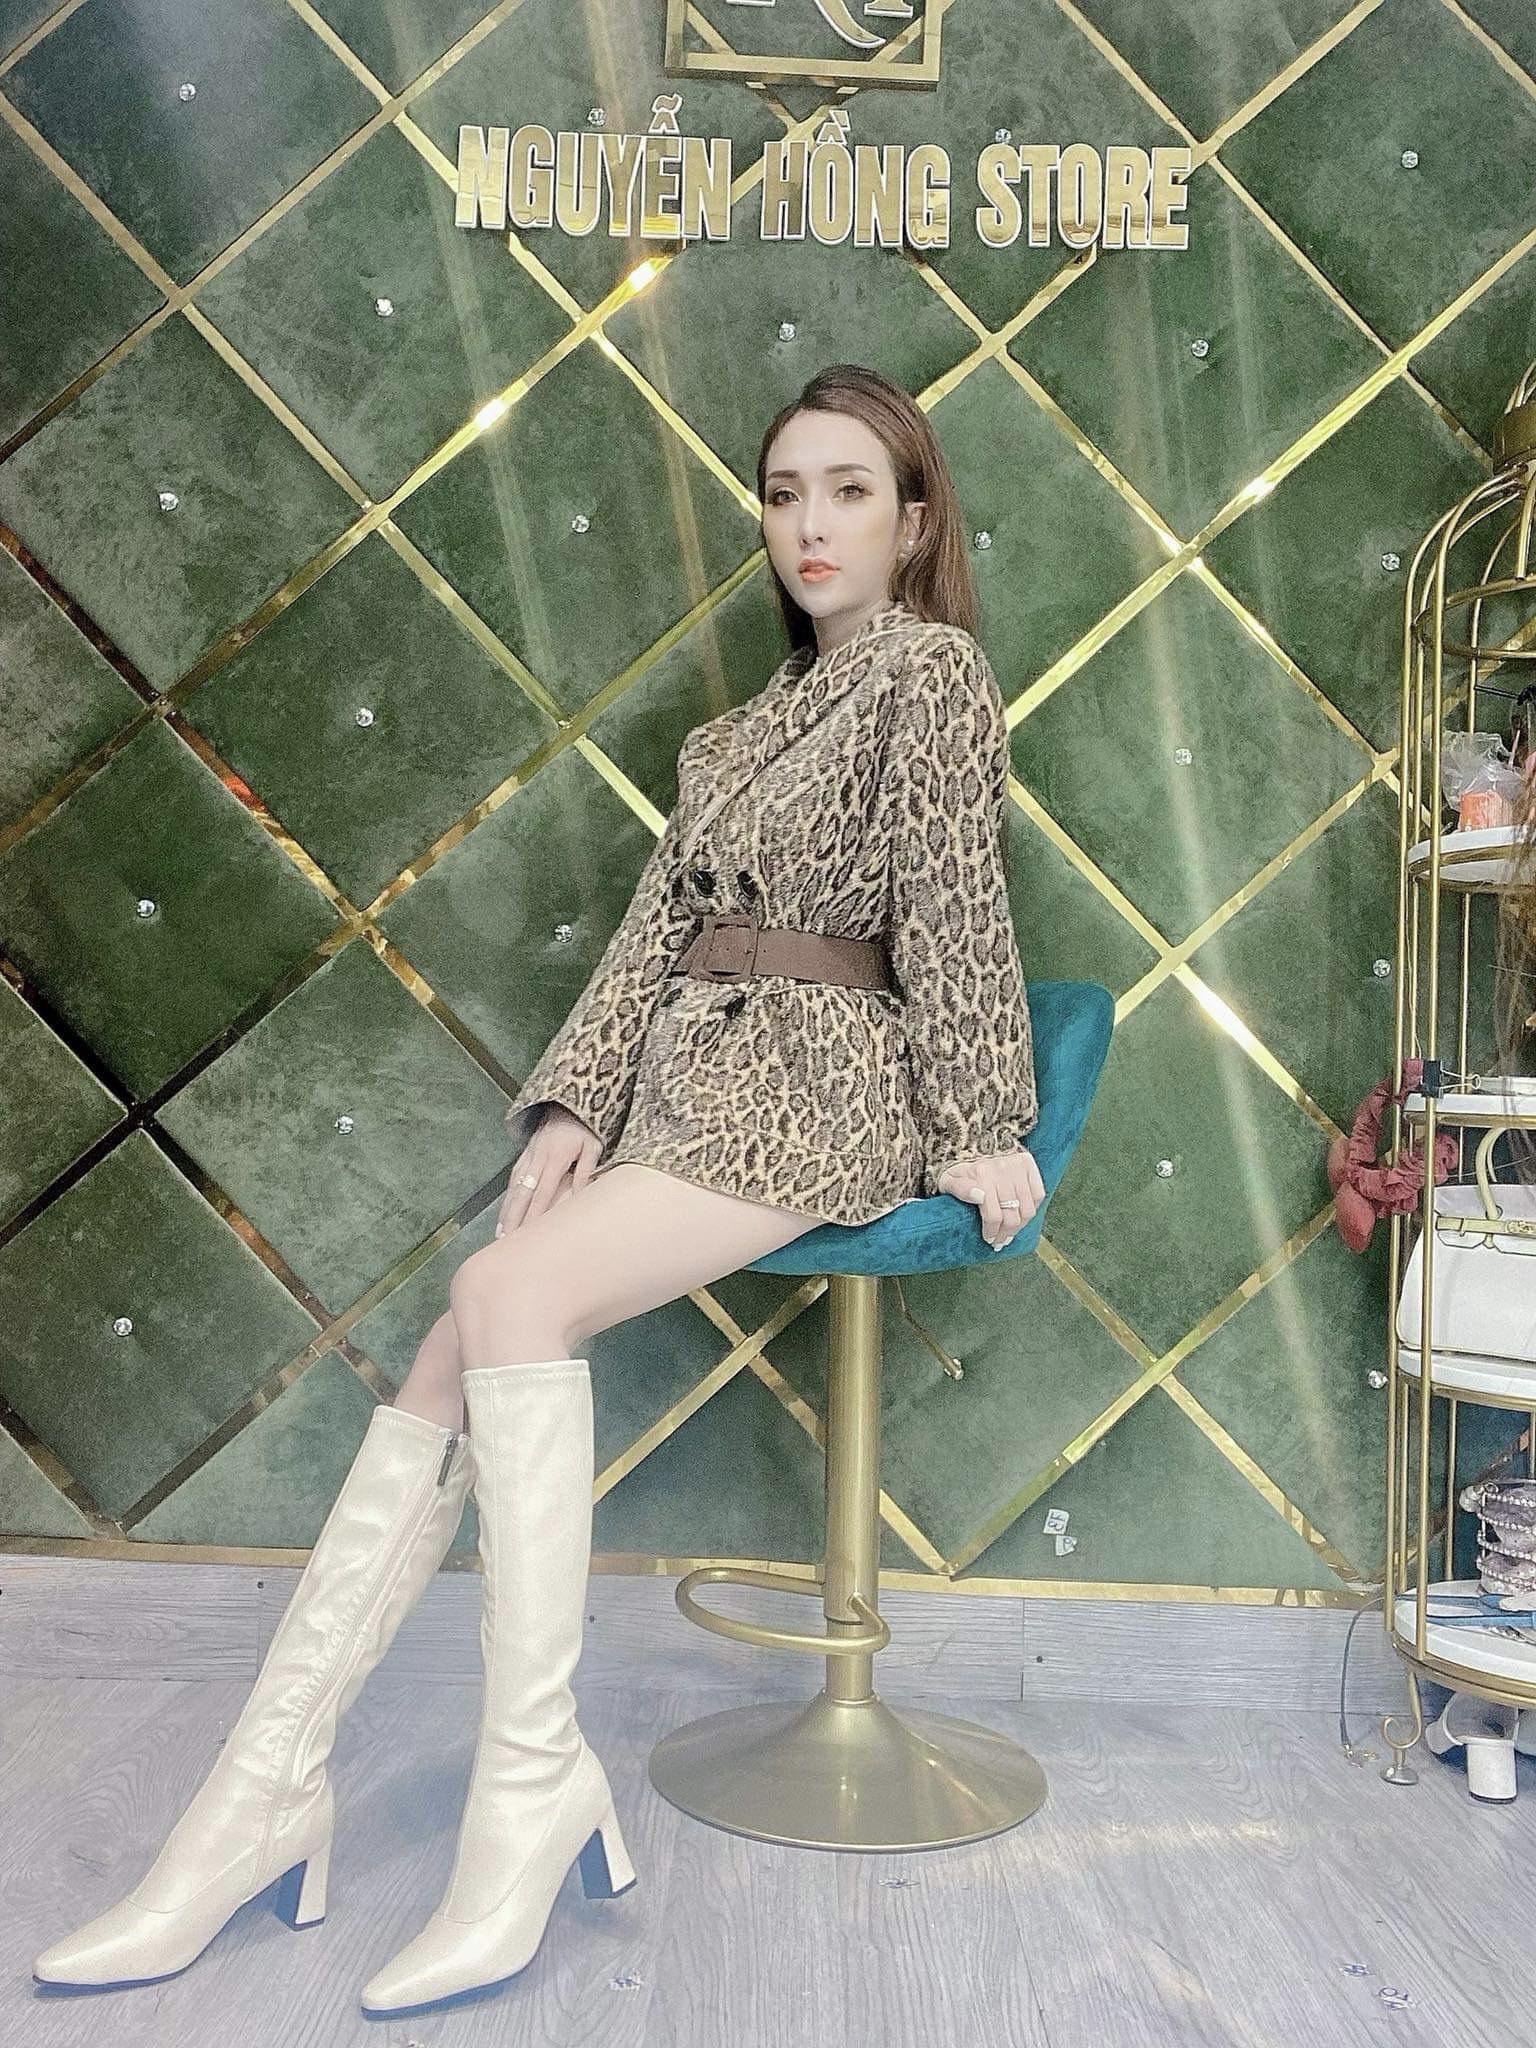 Chân dung cô gái xinh đẹp CEO thương hiệu thời trang Nguyễn Hồng Store 1